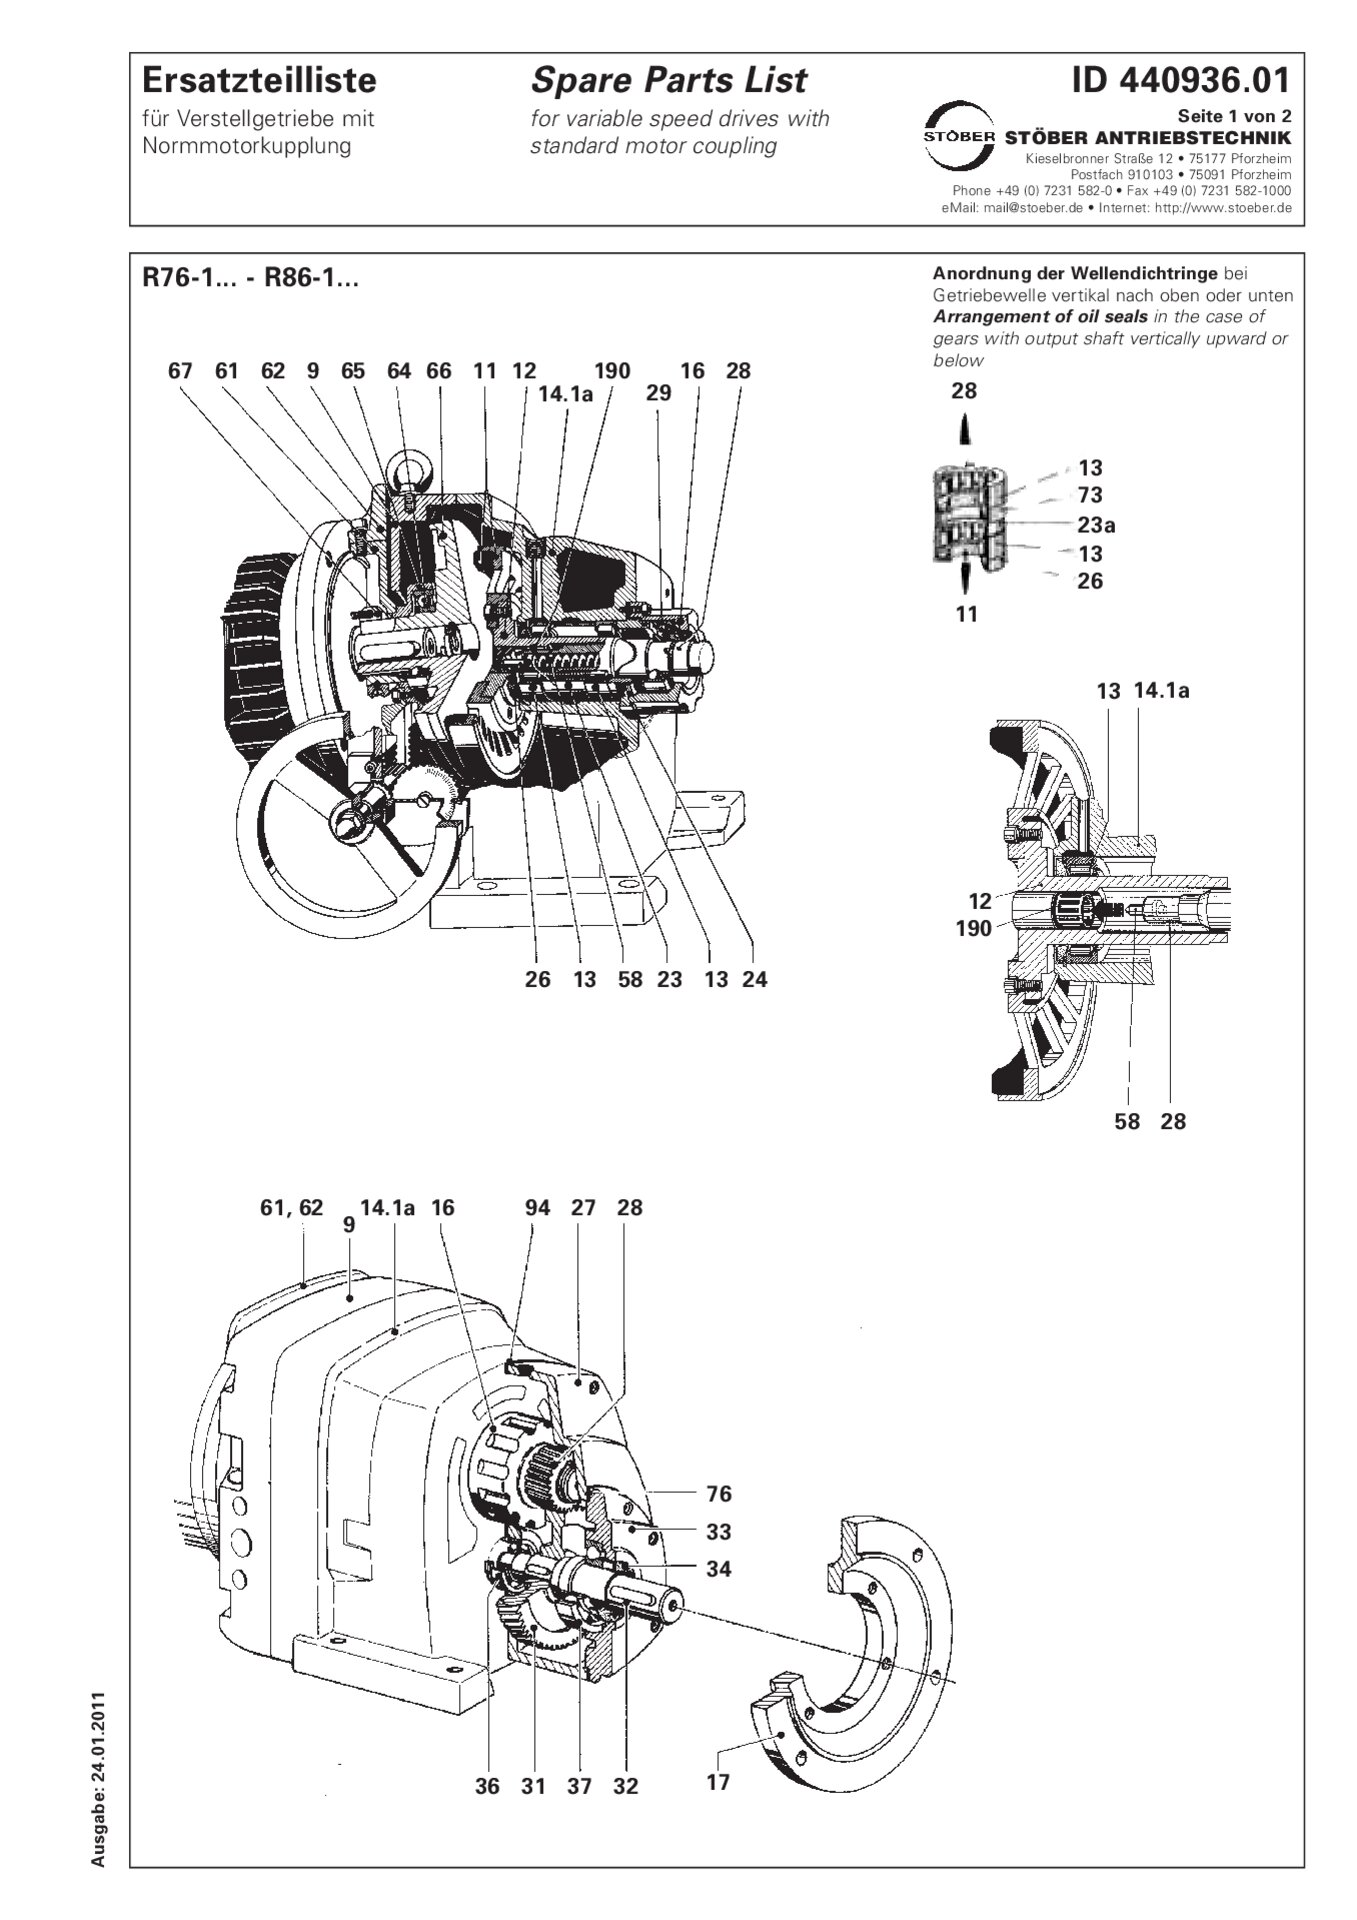 Ersatzteilliste R76-1/R86-1 mit Normmotorkupplung